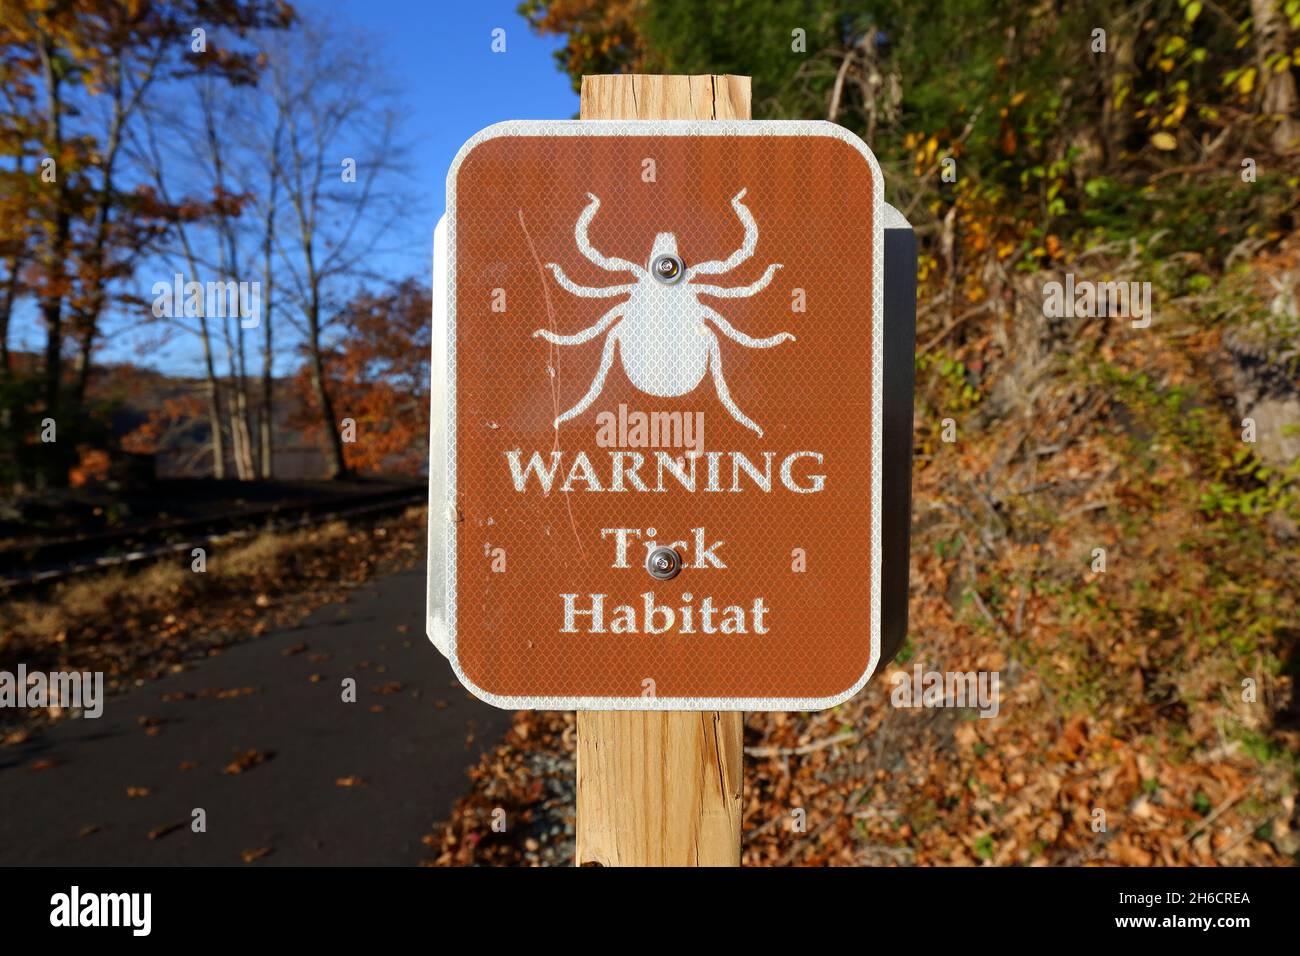 Ein Tick Habitat Warnschild auf einem Pfad. Ein braunes Schild informiert die Nutzer, dass sie ein Gebiet betreten, in dem parastische Arachniden leben Stockfoto